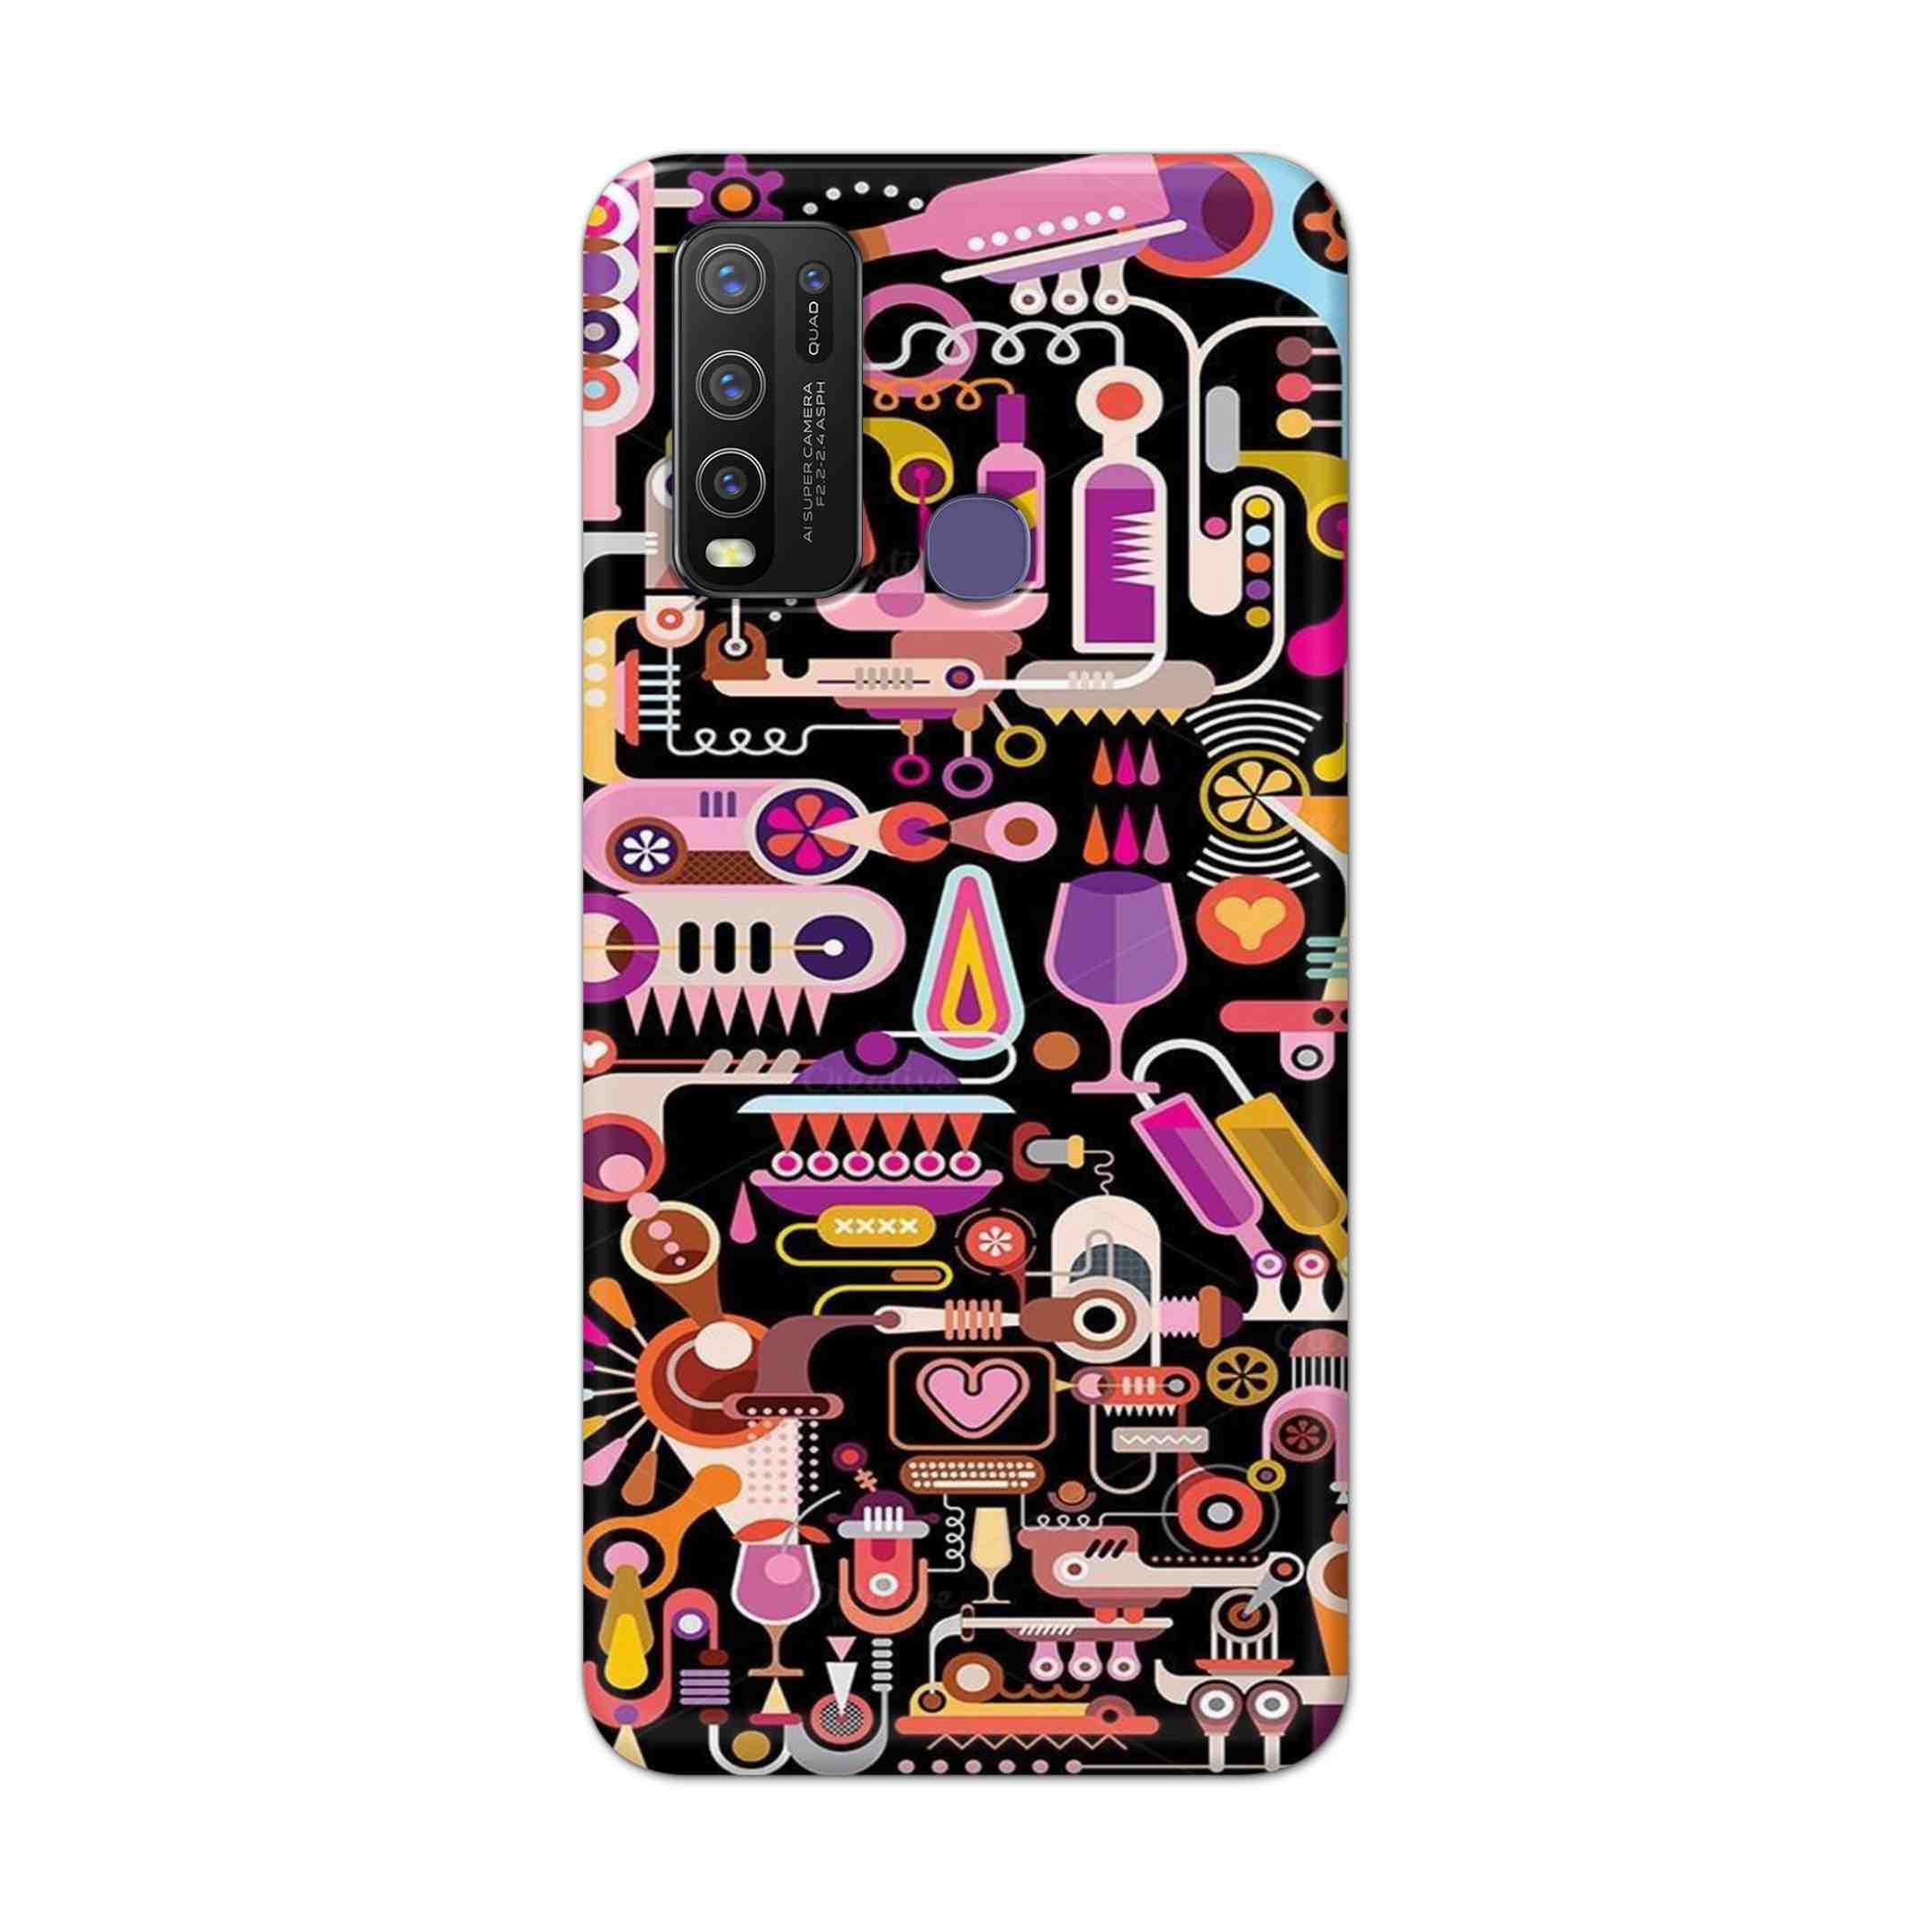 Buy Lab Art Hard Back Mobile Phone Case Cover For Vivo Y50 Online